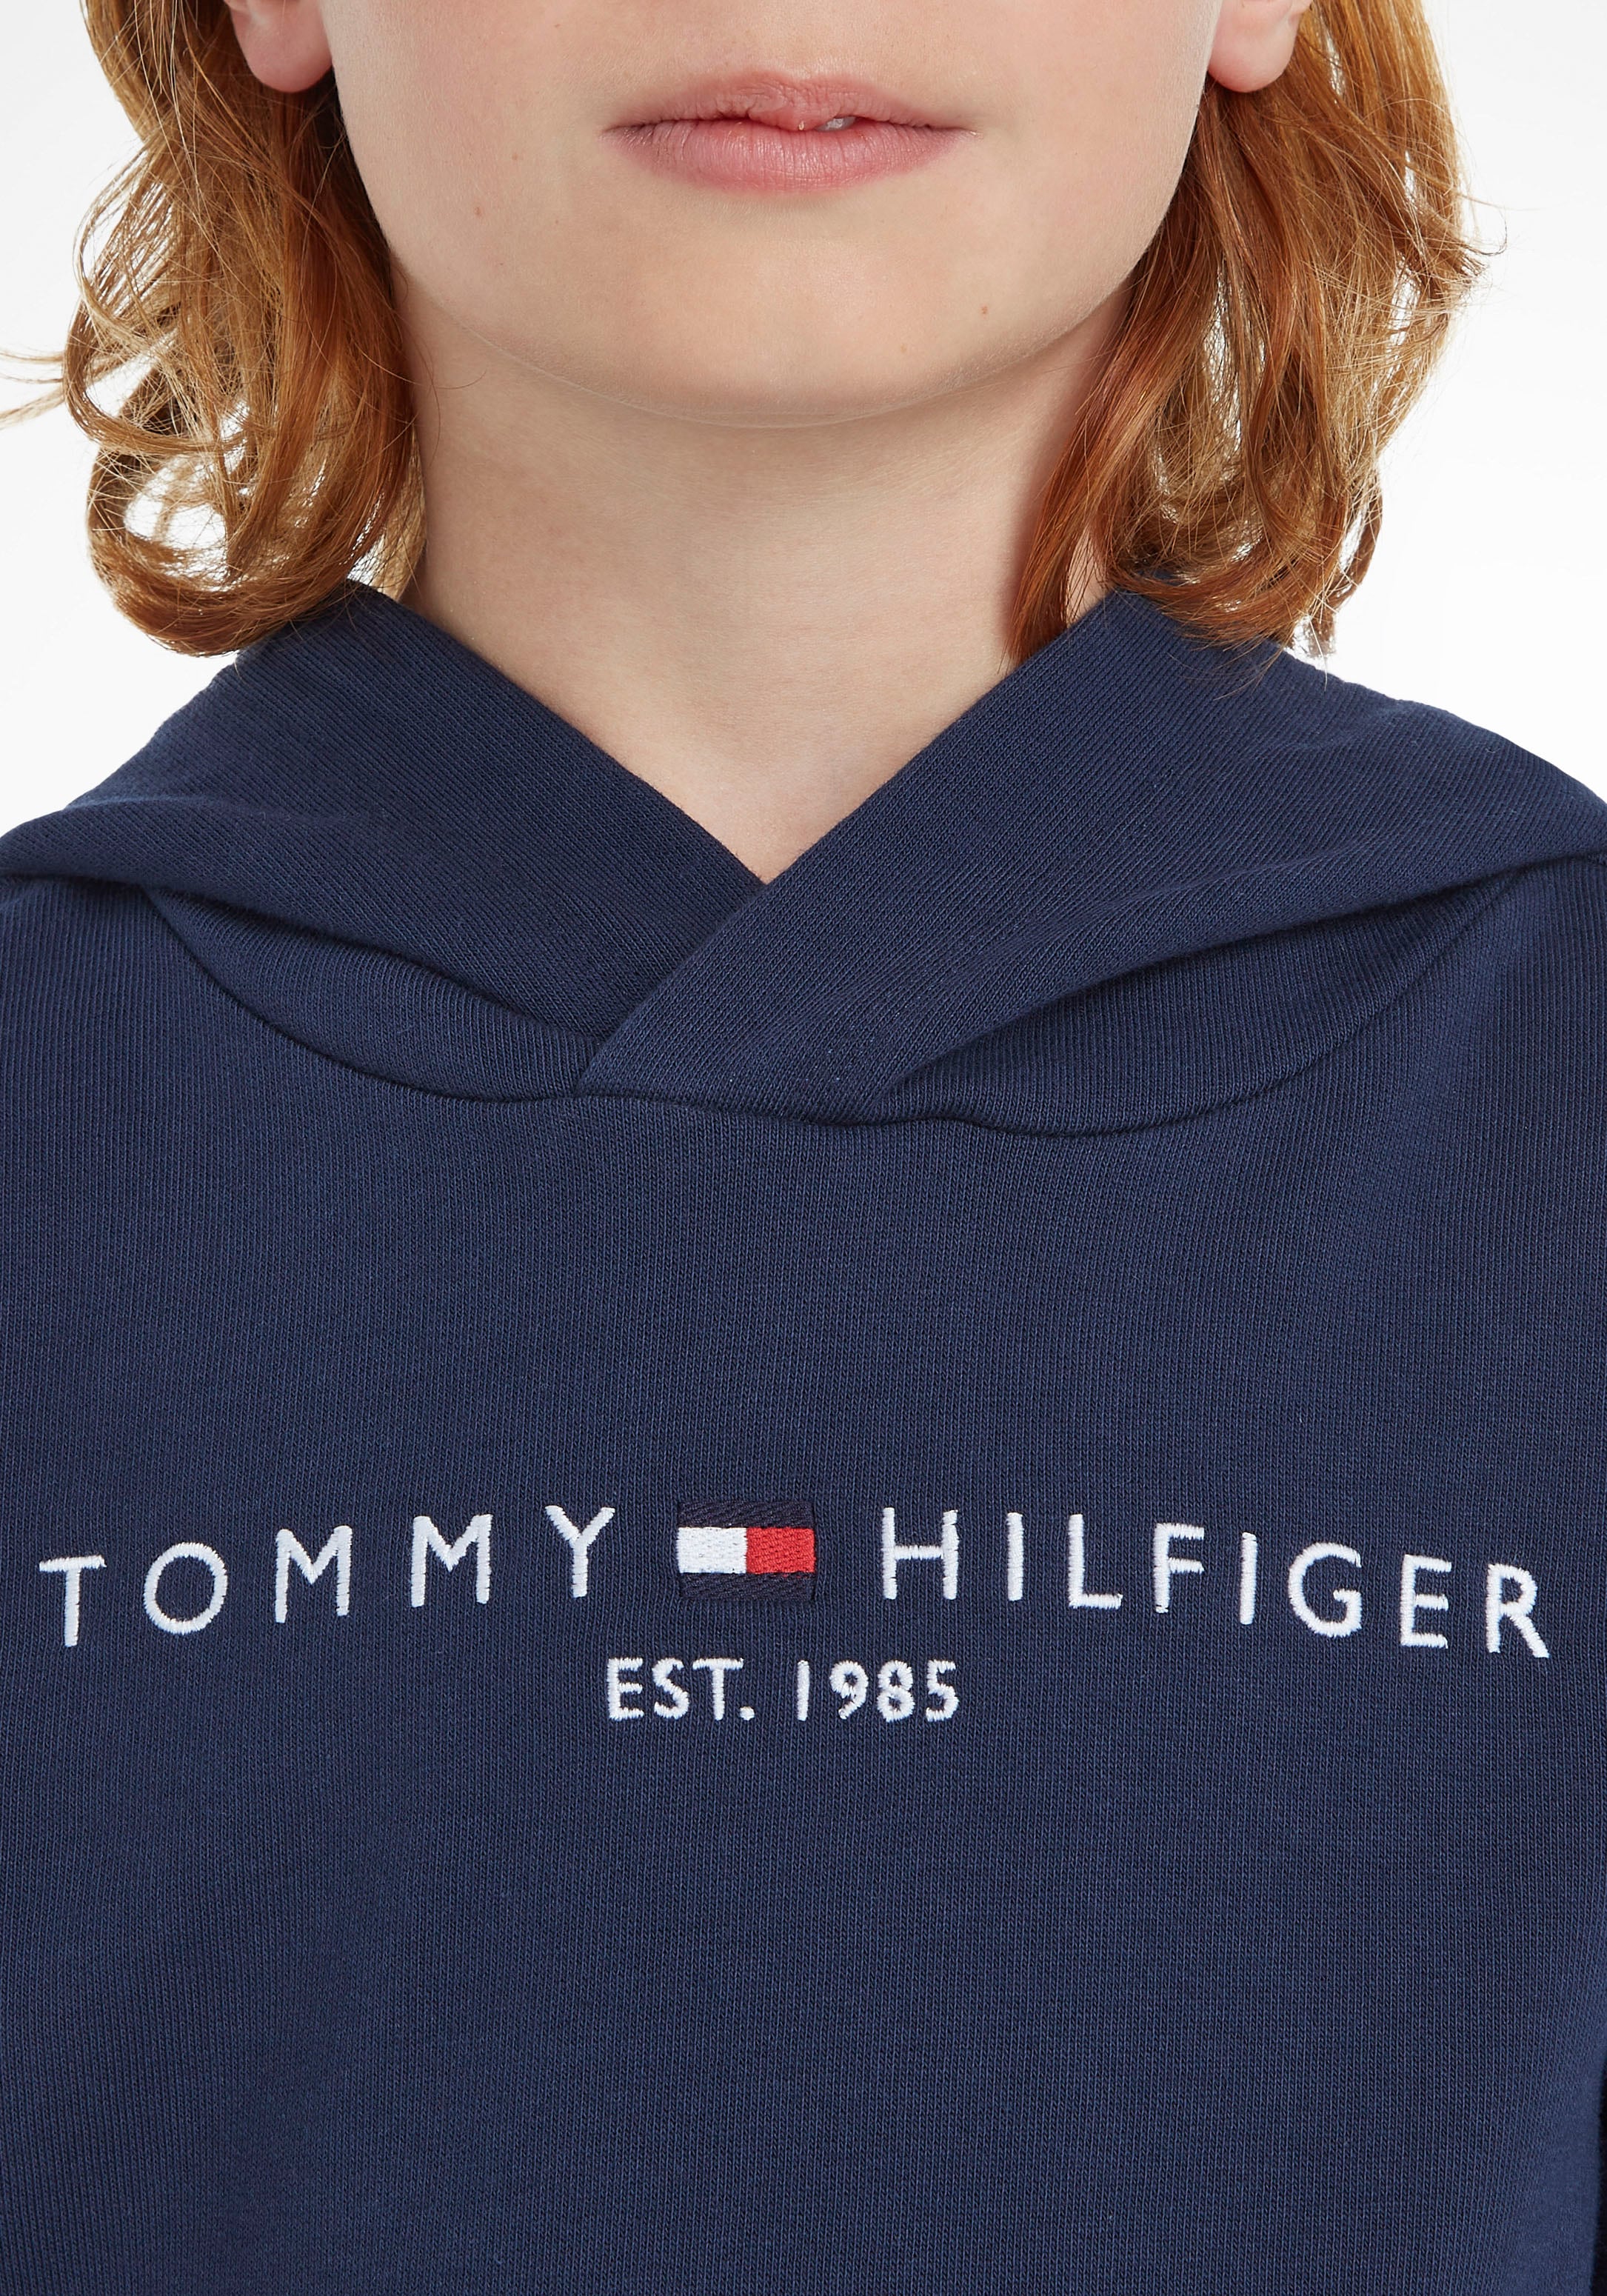 Tommy Hilfiger Kapuzensweatshirt »ESSENTIAL HOODIE«, für Jungen und Mädchen